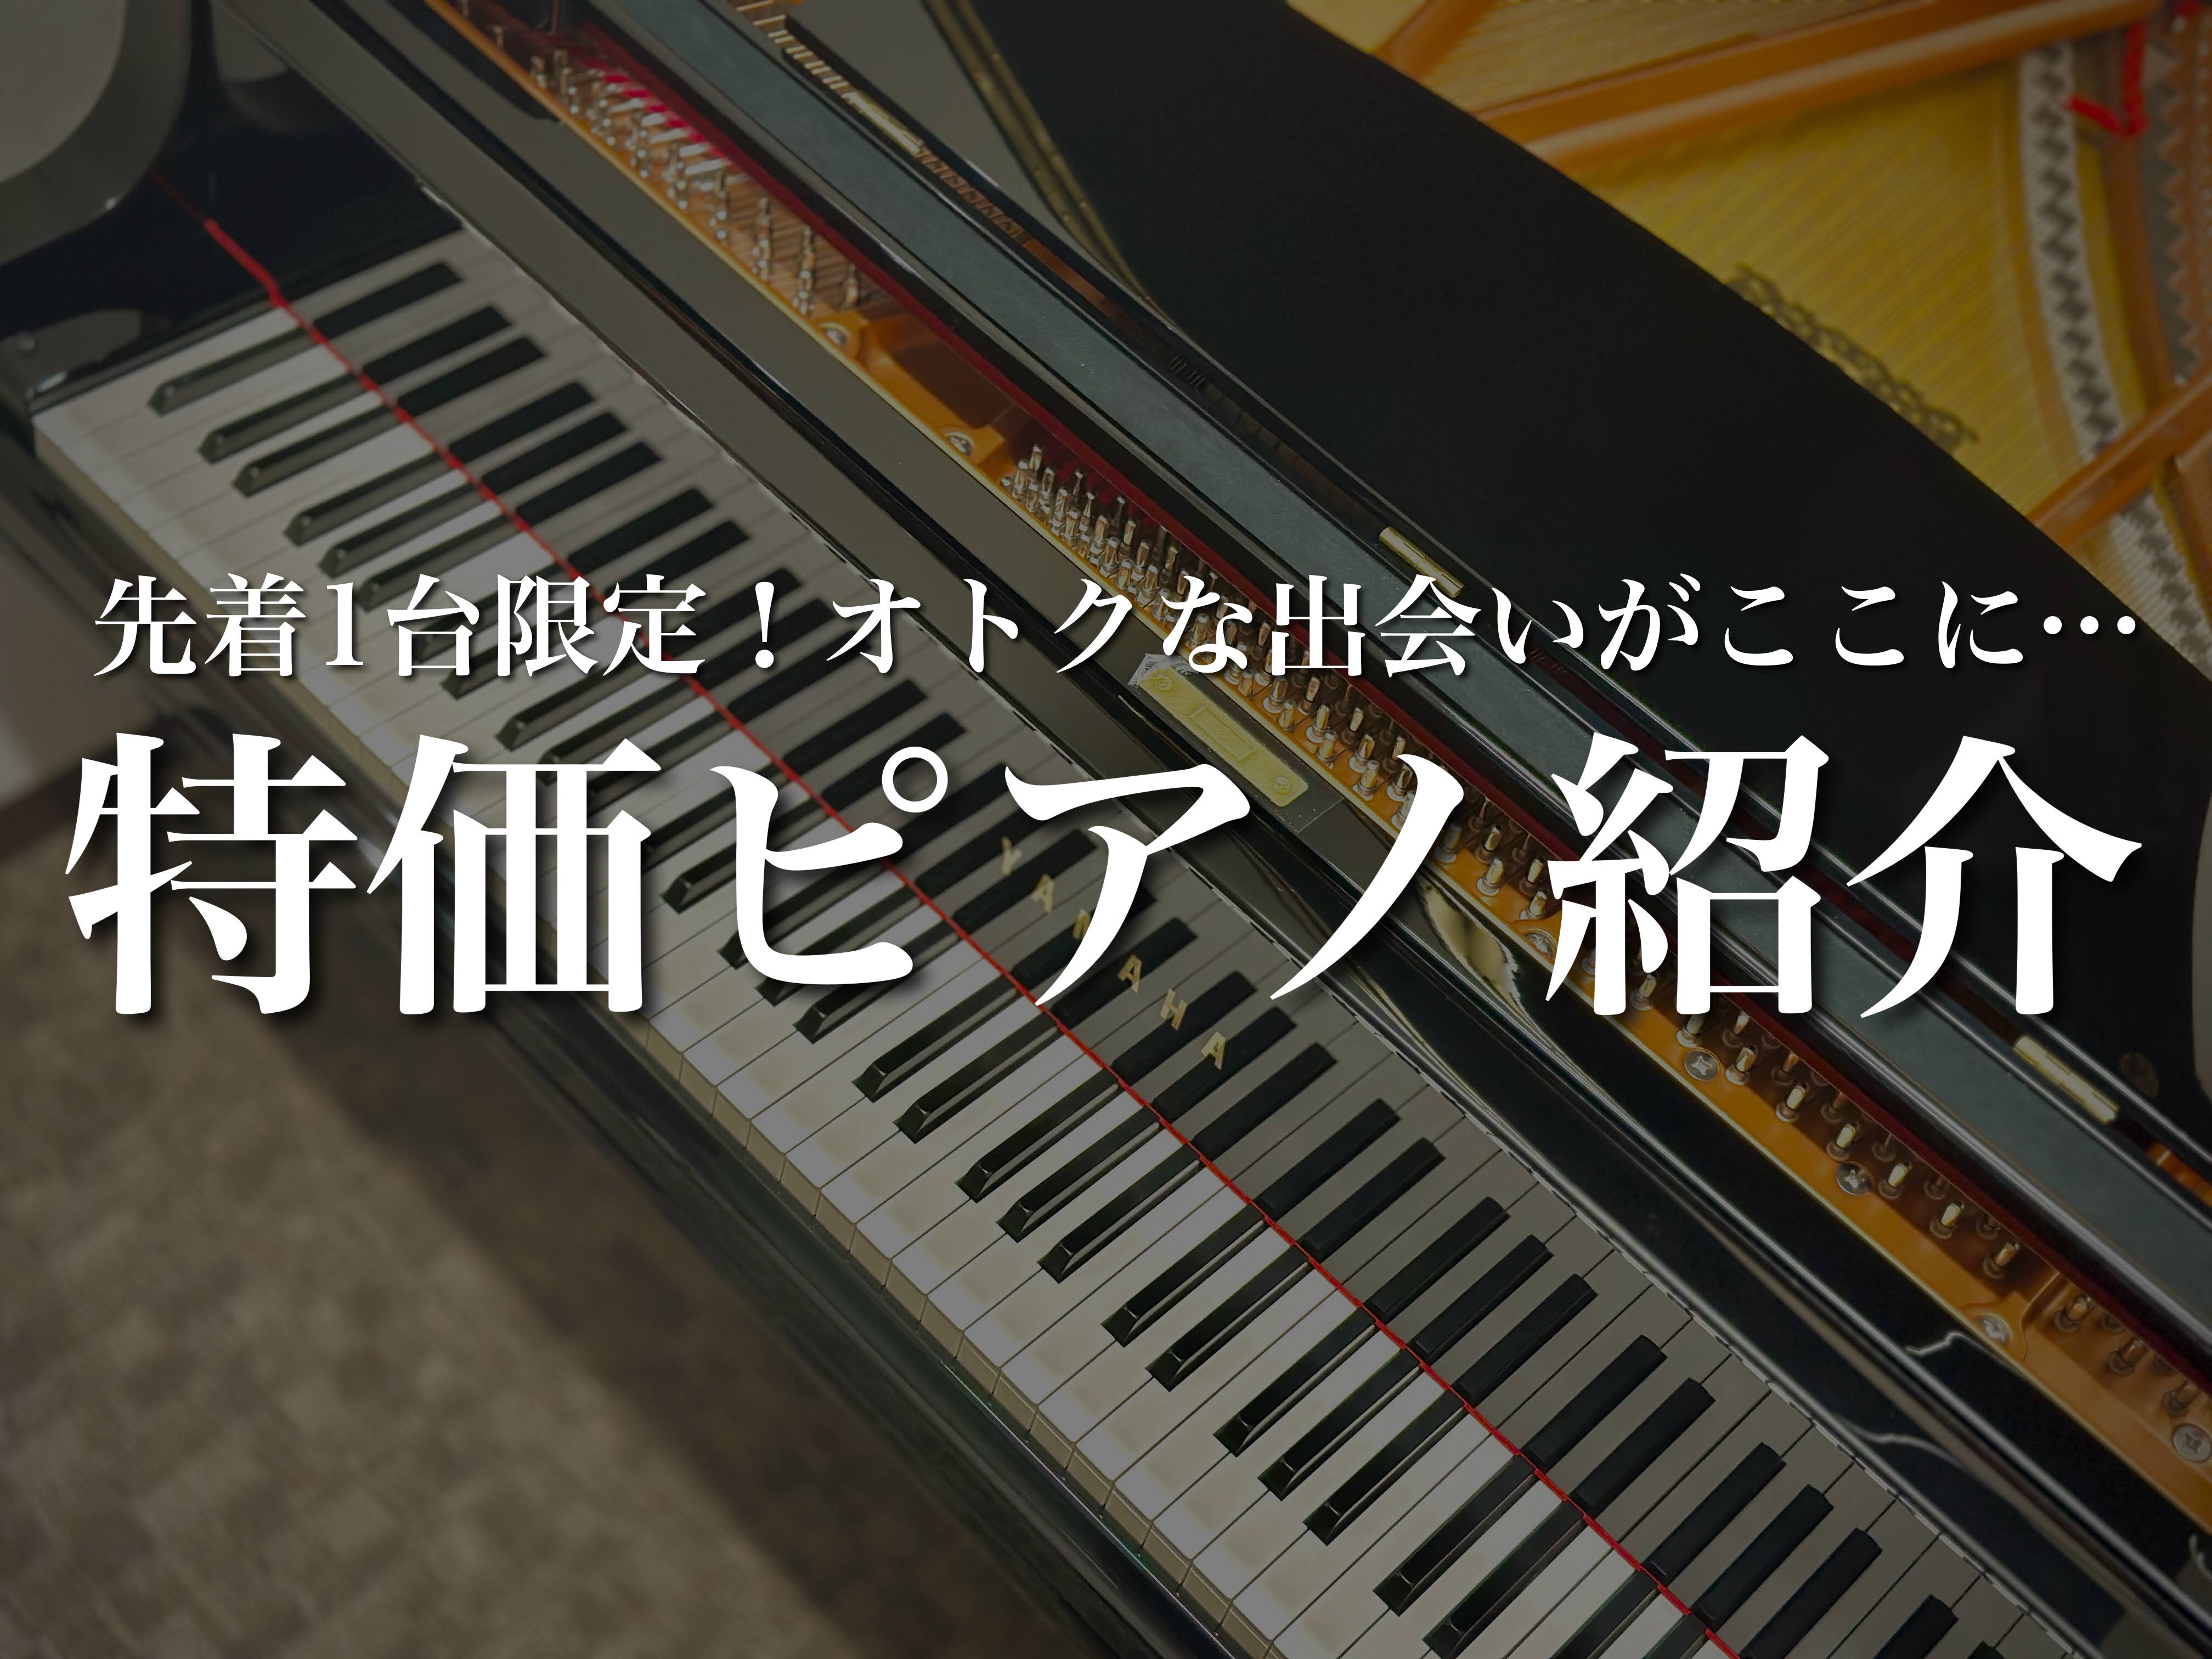 CONTENTS当店が選ばれる理由お問い合わせ当店が選ばれる理由 島村楽器 名古屋則武新町店ではピアノ専門のスタッフが常駐しており、ピアノが初めての方はもちろん、ご経験のある方にも楽器選びからお手入れの仕方、演奏やレッスンのご相談にいたるまで様々な問題を解決いたします。 電子ピアノからアップライトピ […]